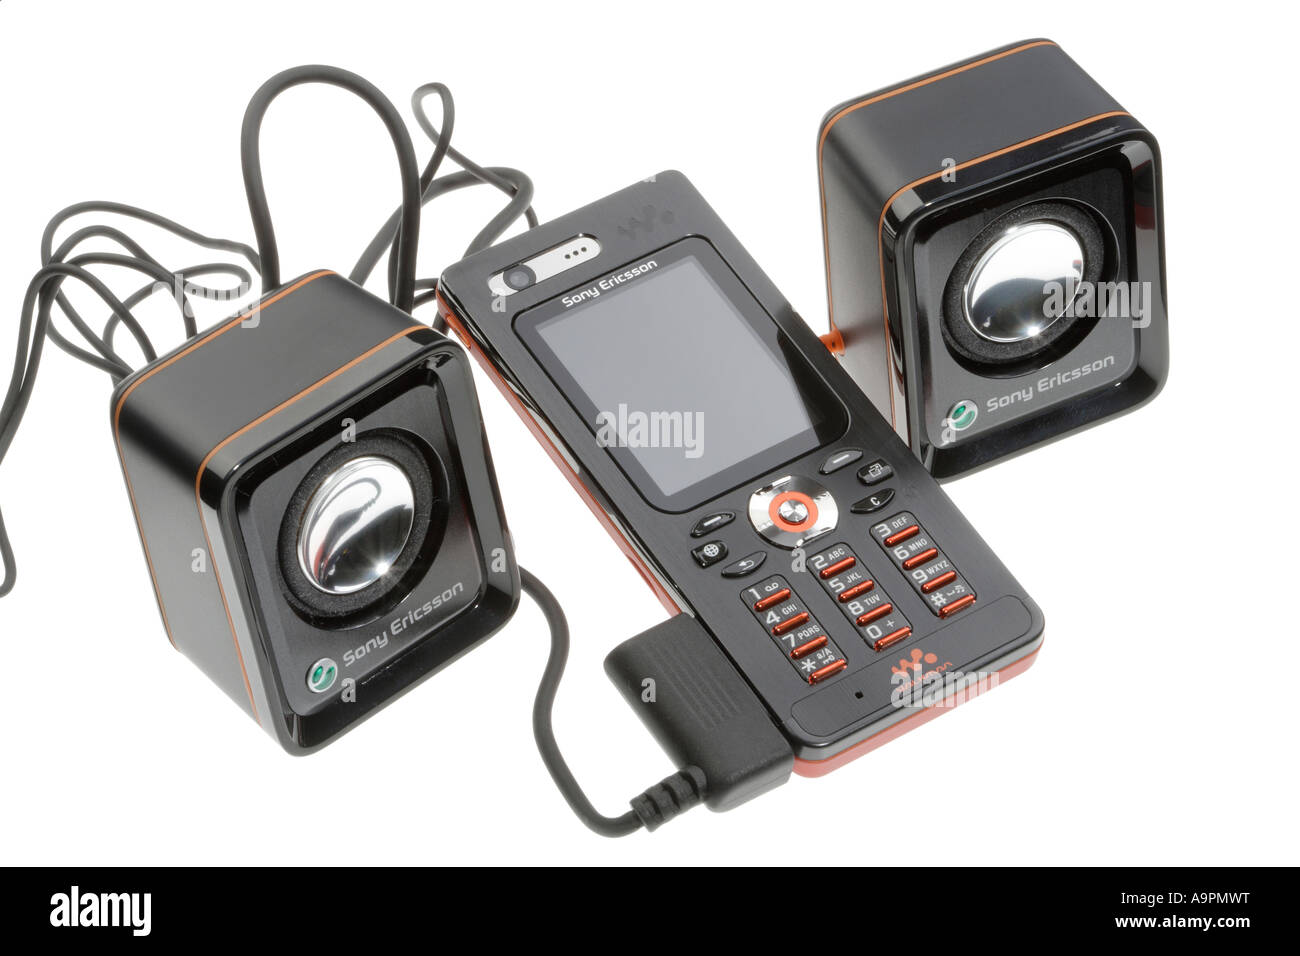 Walkman telefono mobile cellulare Sony Ericsson lettore musicale Foto Stock